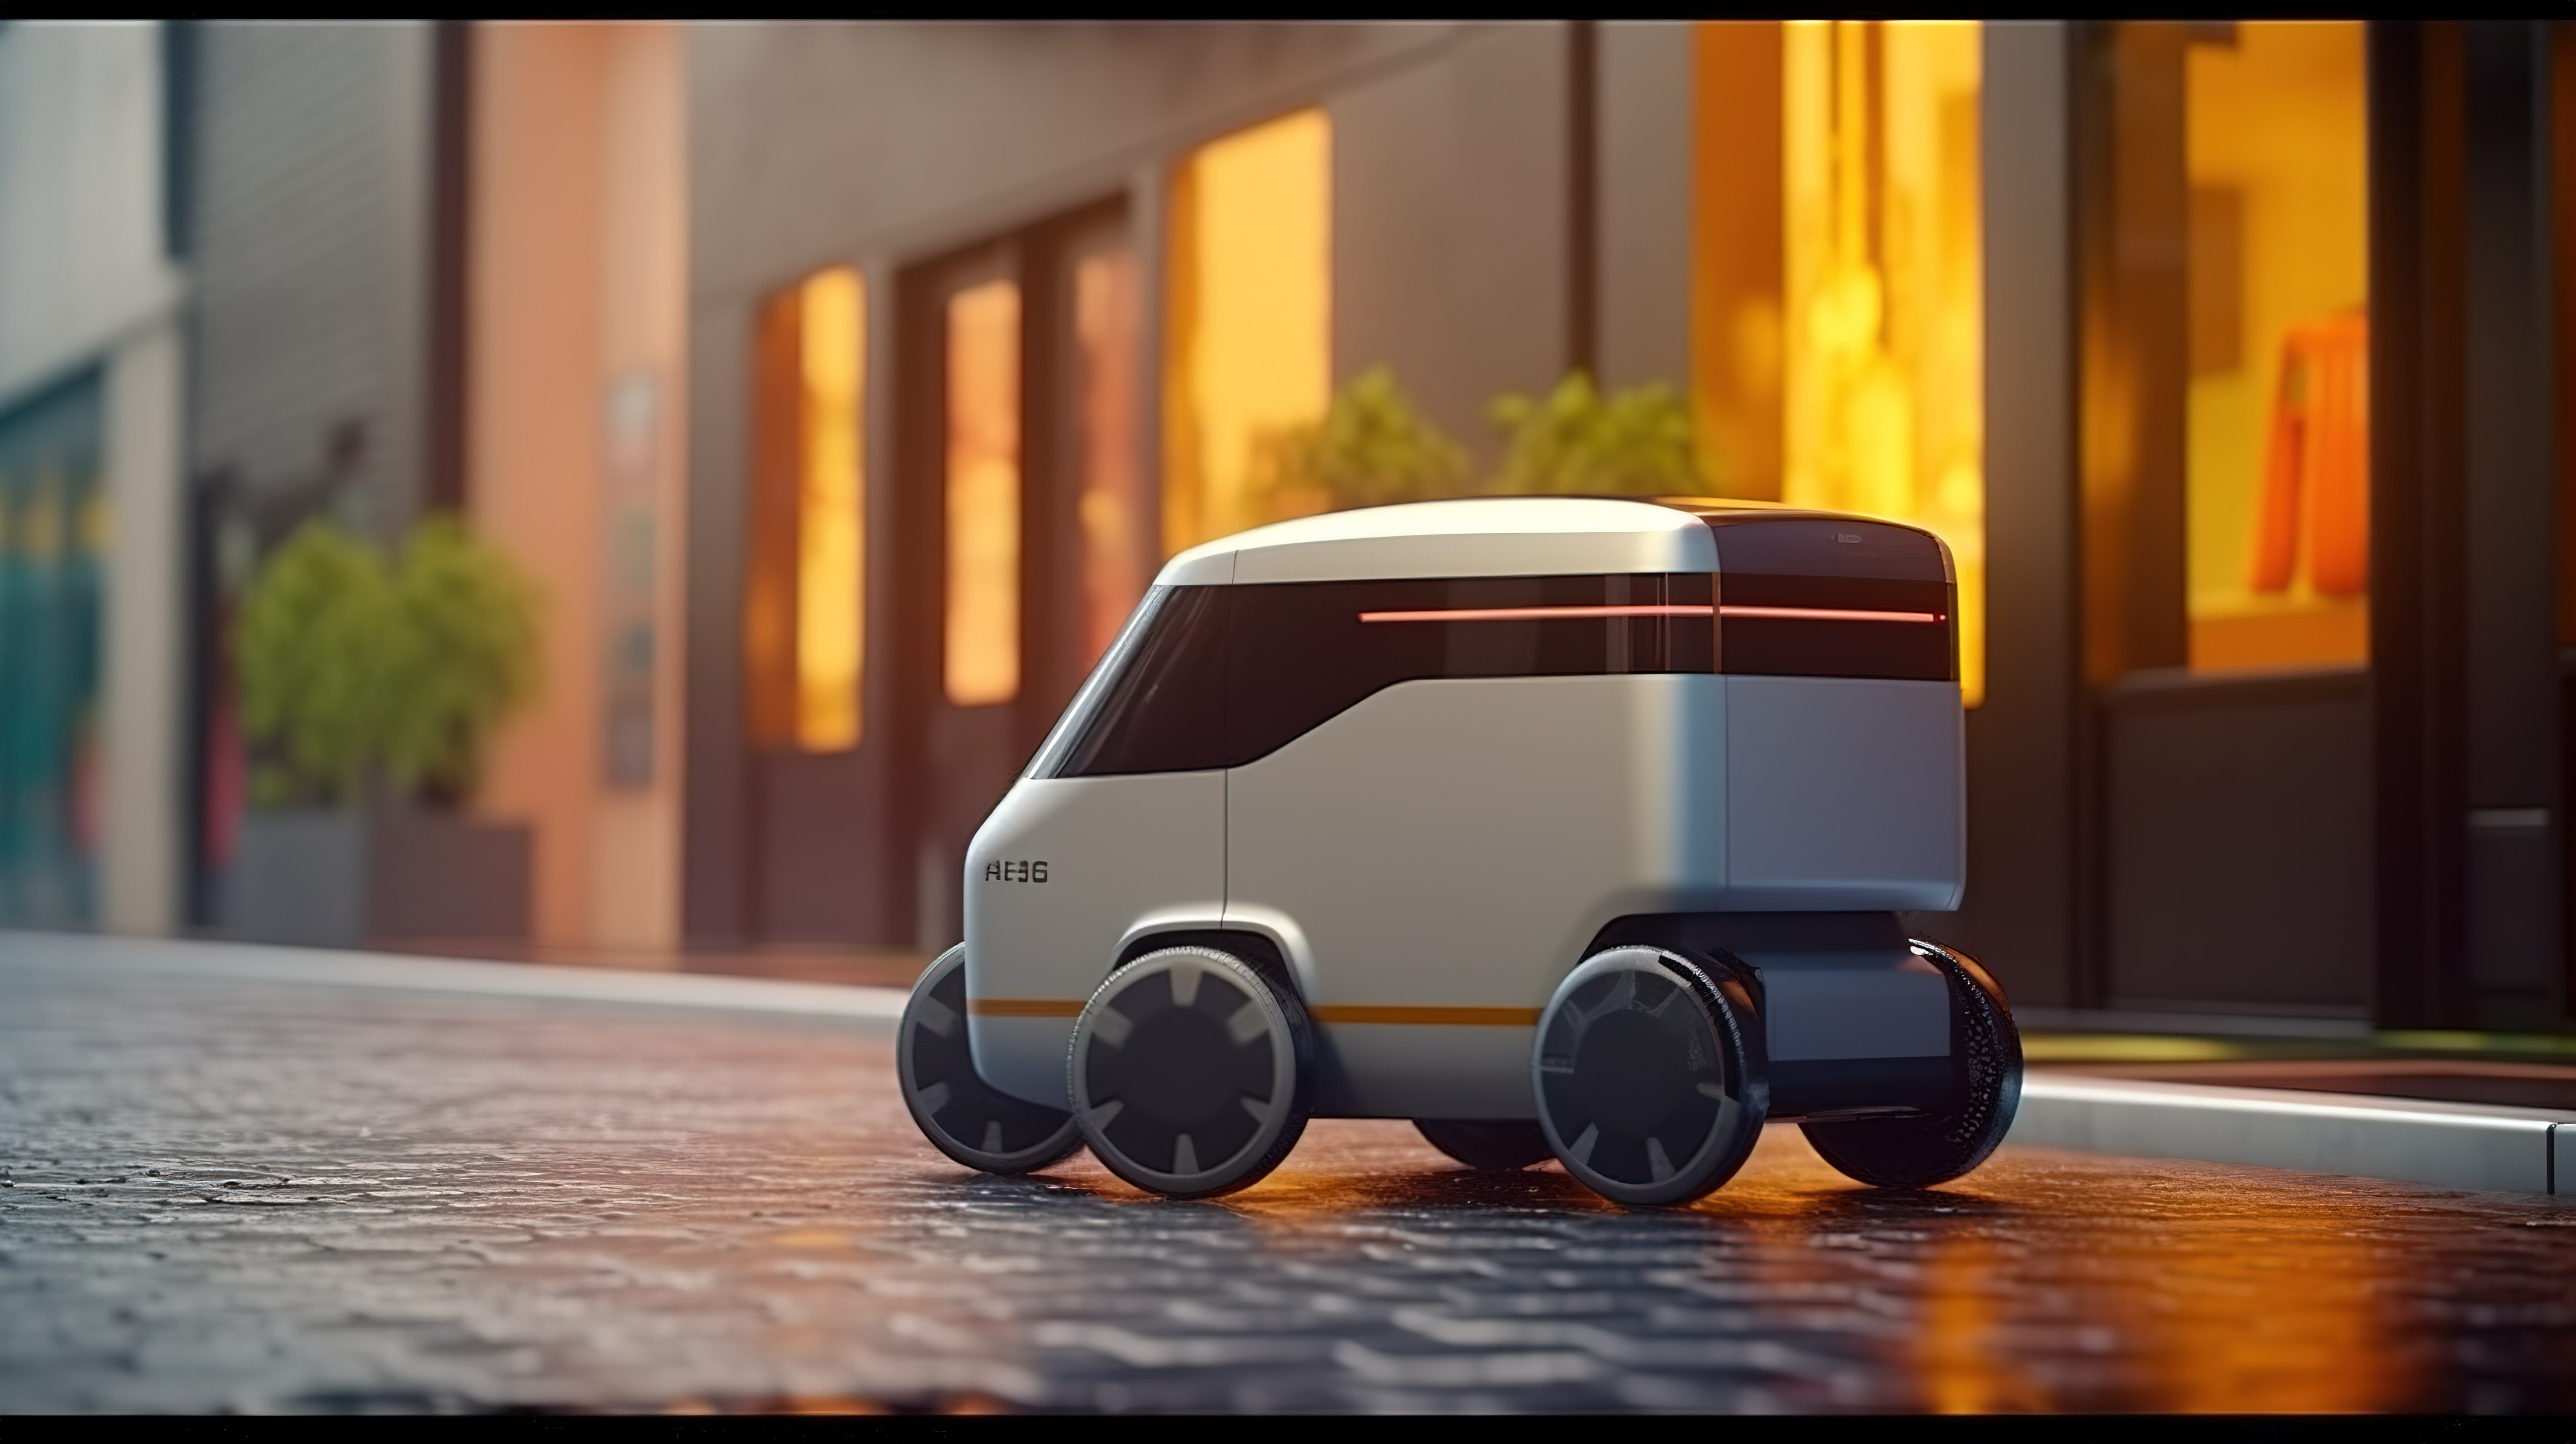 未来智能汽车技术无人驾驶自动送货机器人在街上图片